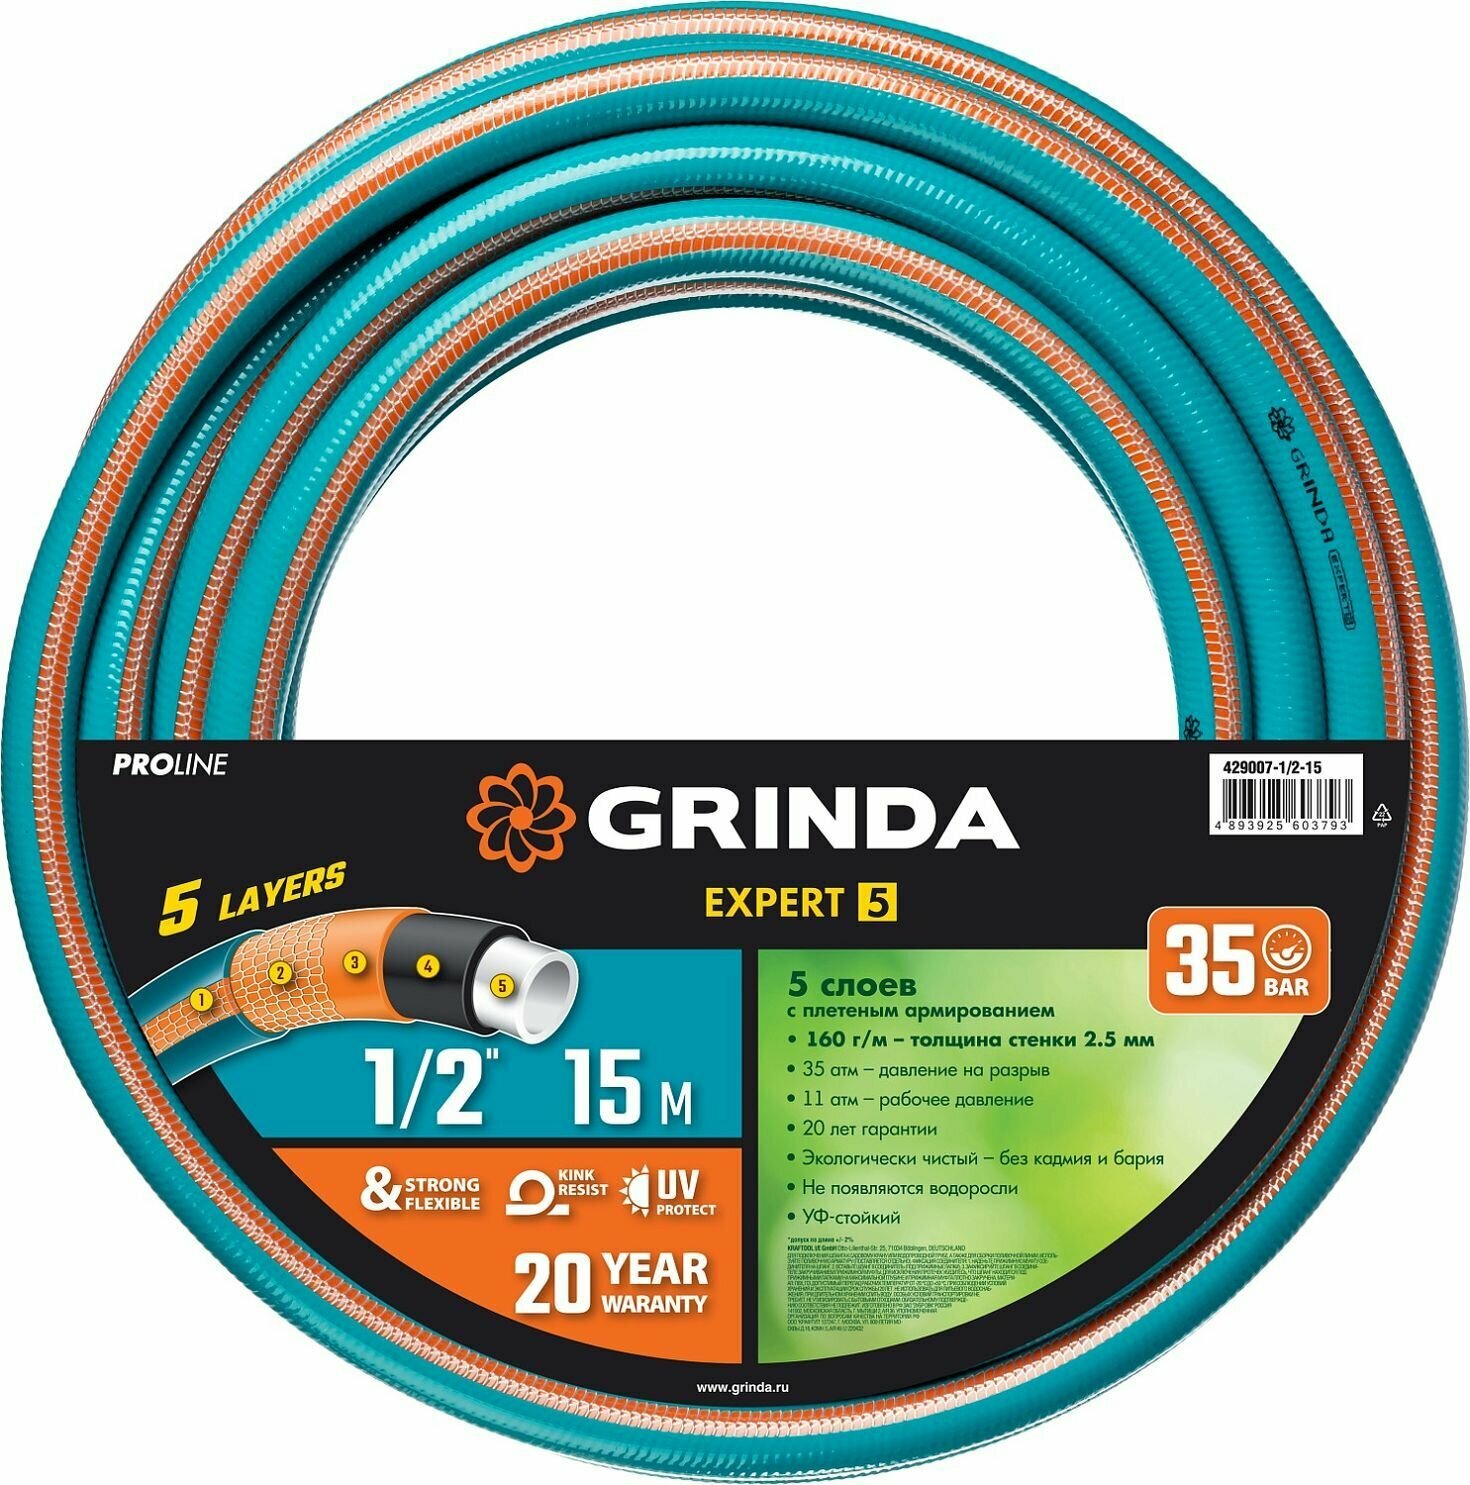 Шланг поливочный 1/2" 15 м Grinda PROLine EXPERT 429007-1/2-15